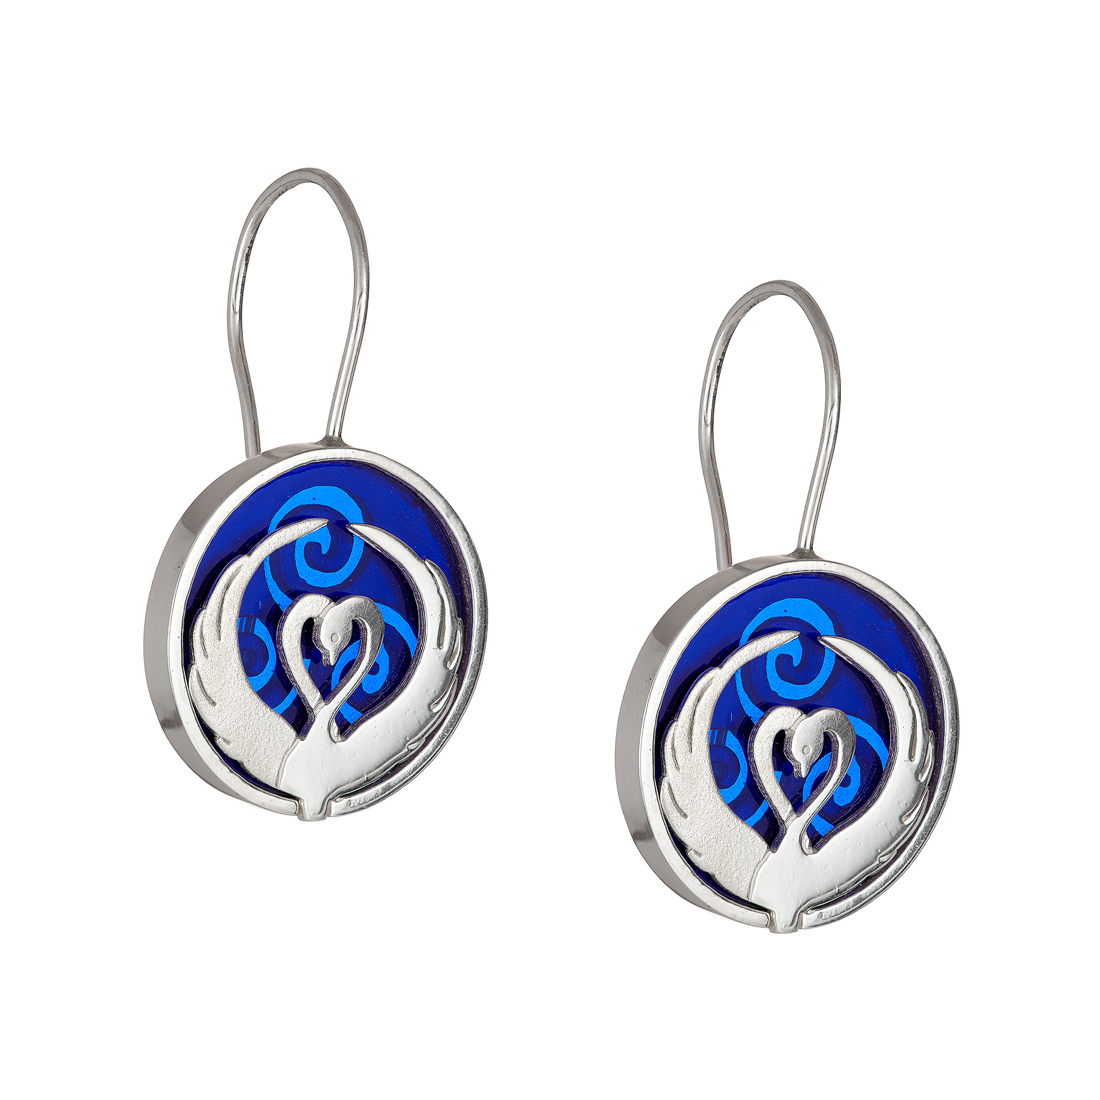 Children of Lir blue earrings - Tracy Gilbert Designs